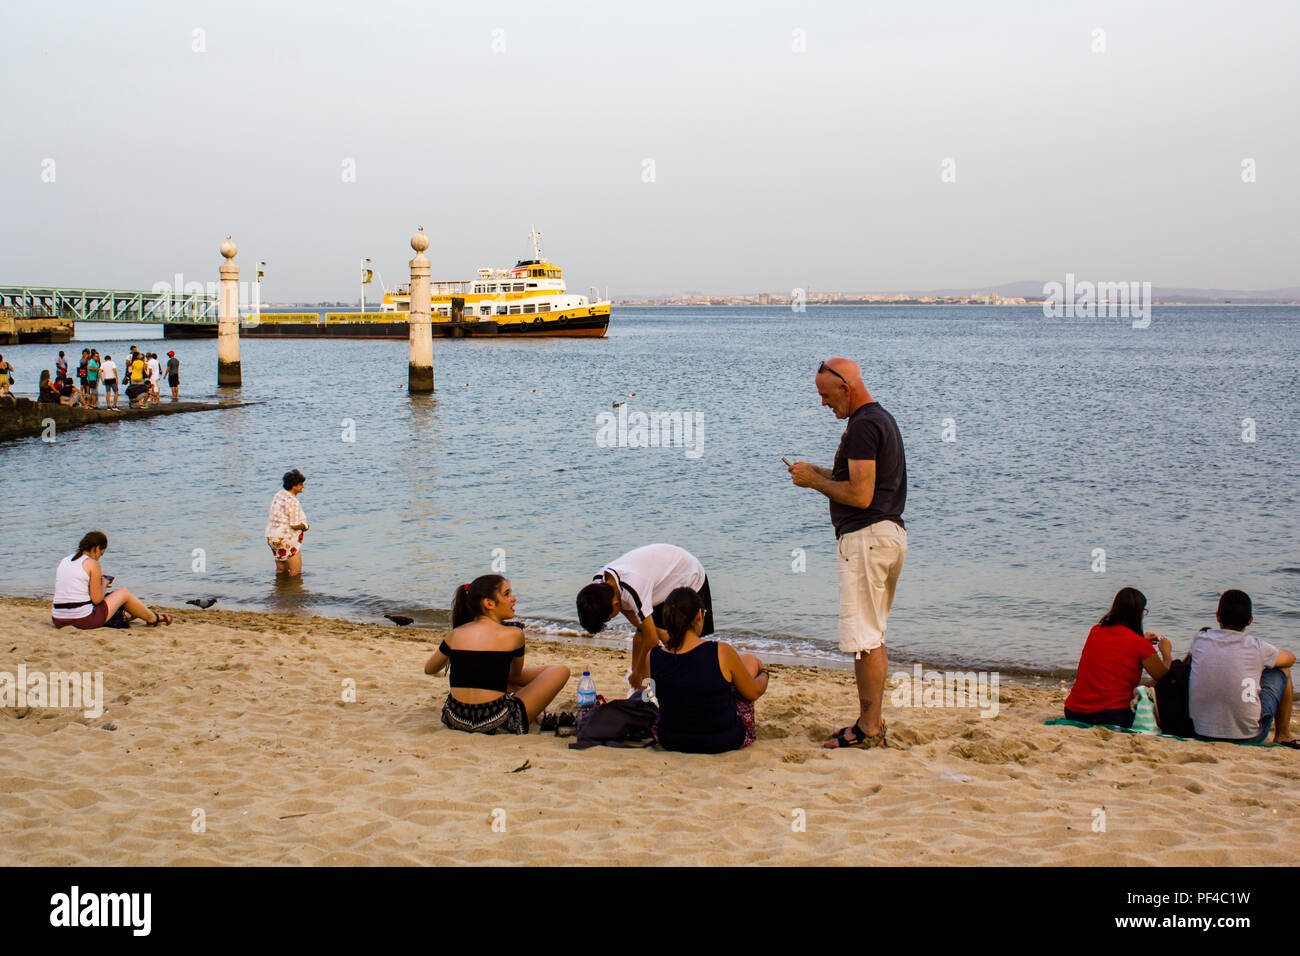 Le persone sono il raffreddamento al fiume Tago su una delle più calde giornate estive in Portogallo Foto Stock